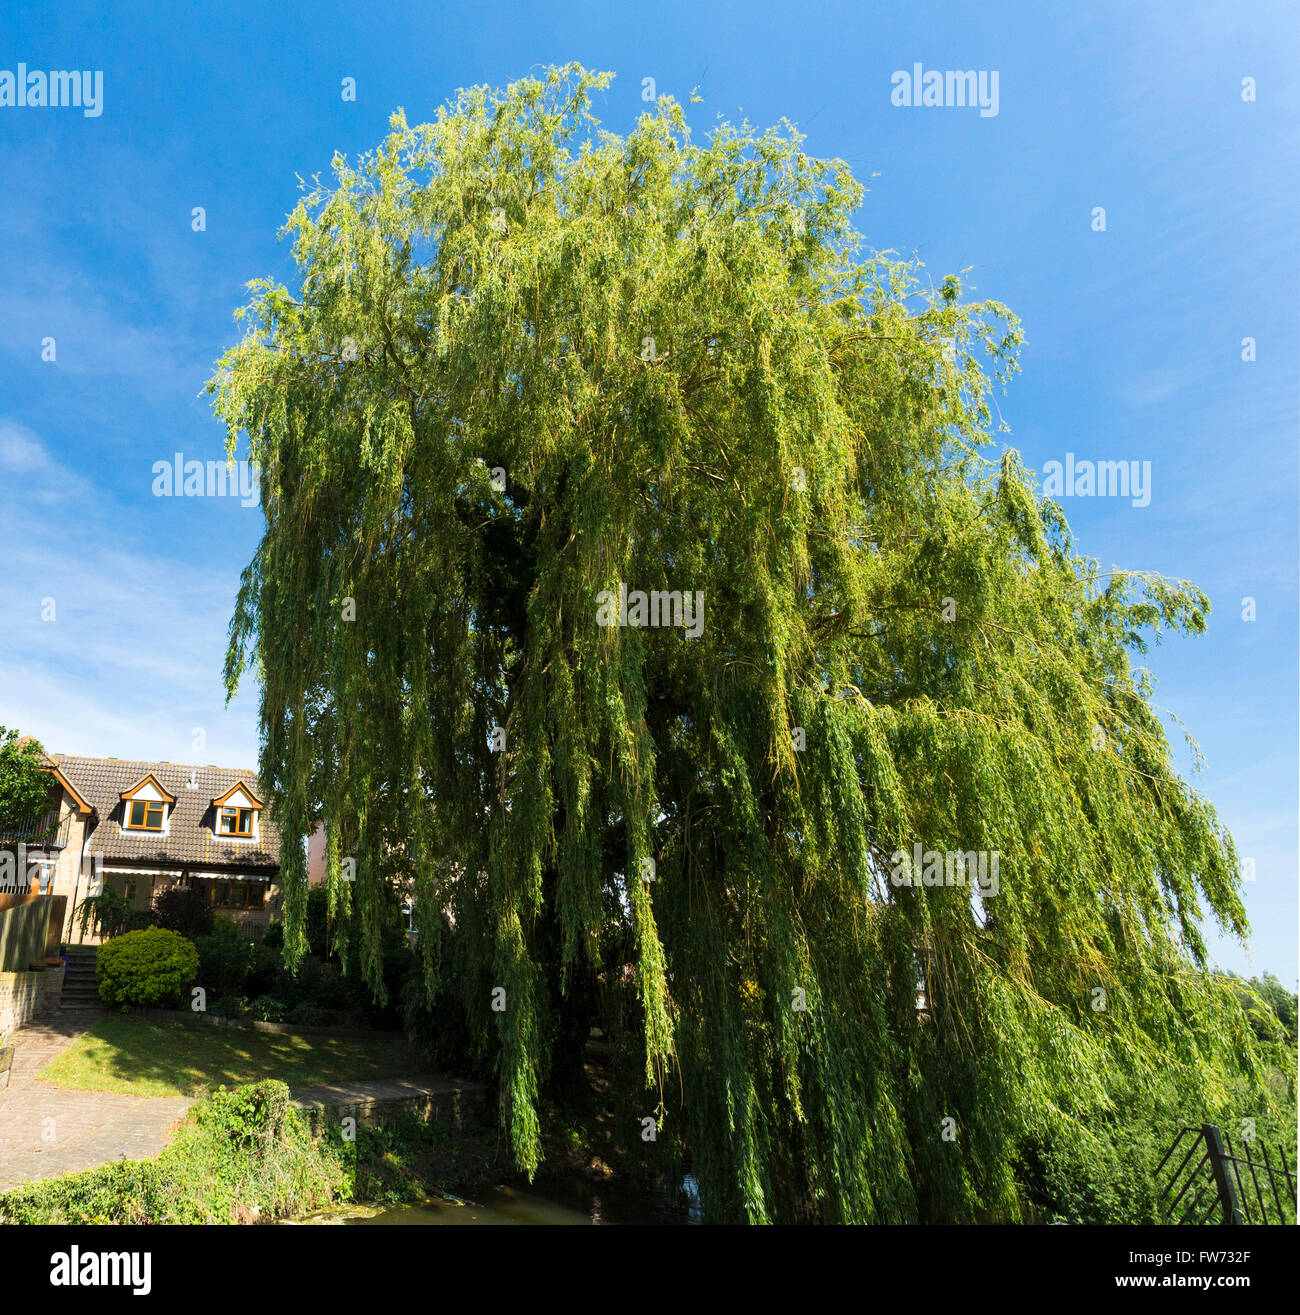 willow tree Salix alba Vitellina-Tristis Stock Photo